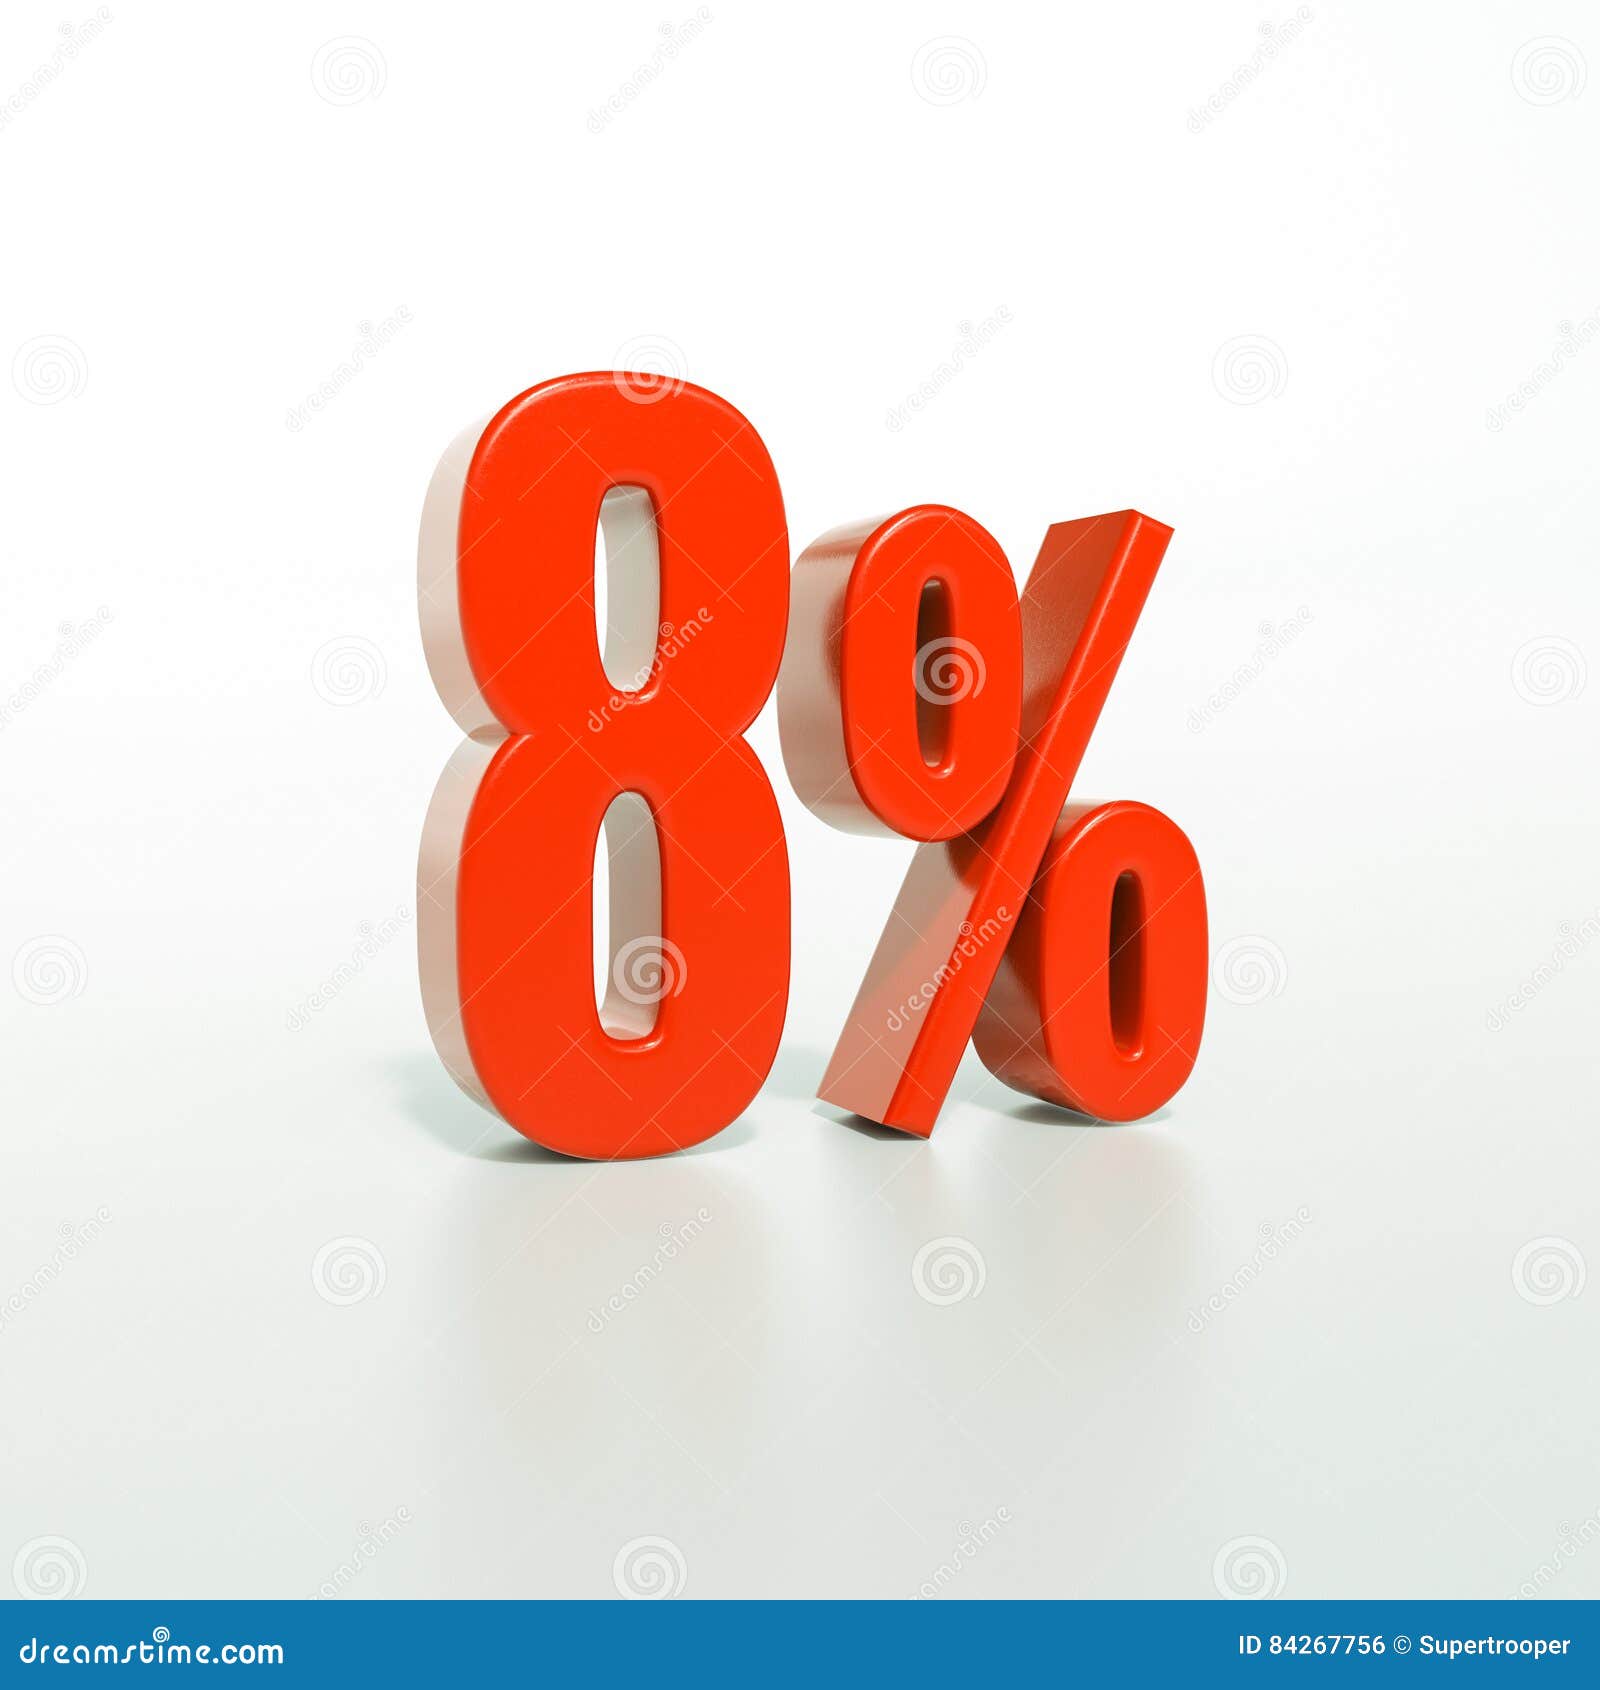 8 процентов от блогера